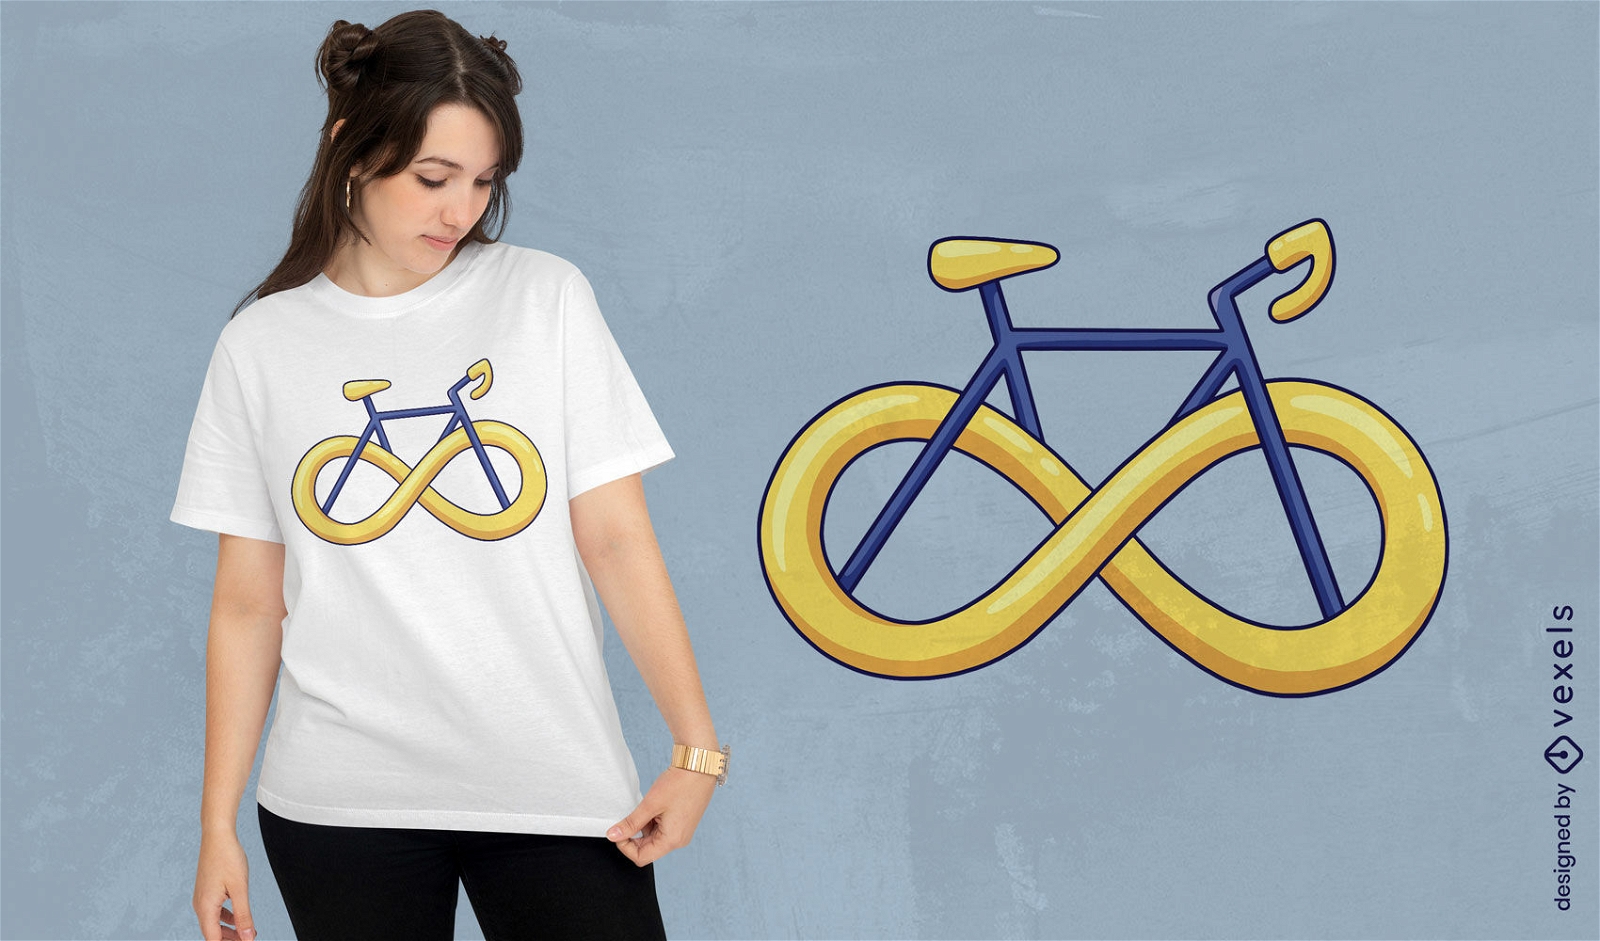 Dise?o de camiseta de bicicleta con s?mbolo de infinito.